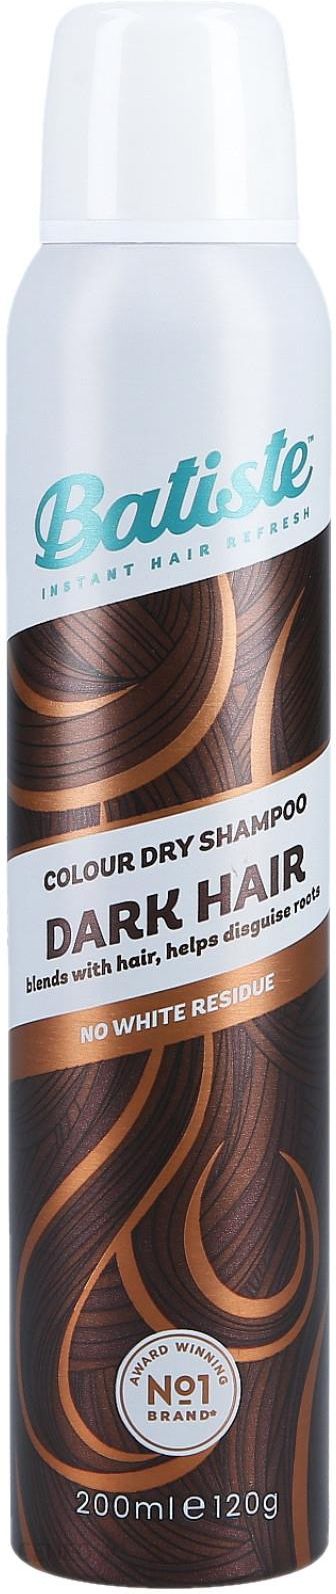 szampon batiste dostosowany do koloru włosów